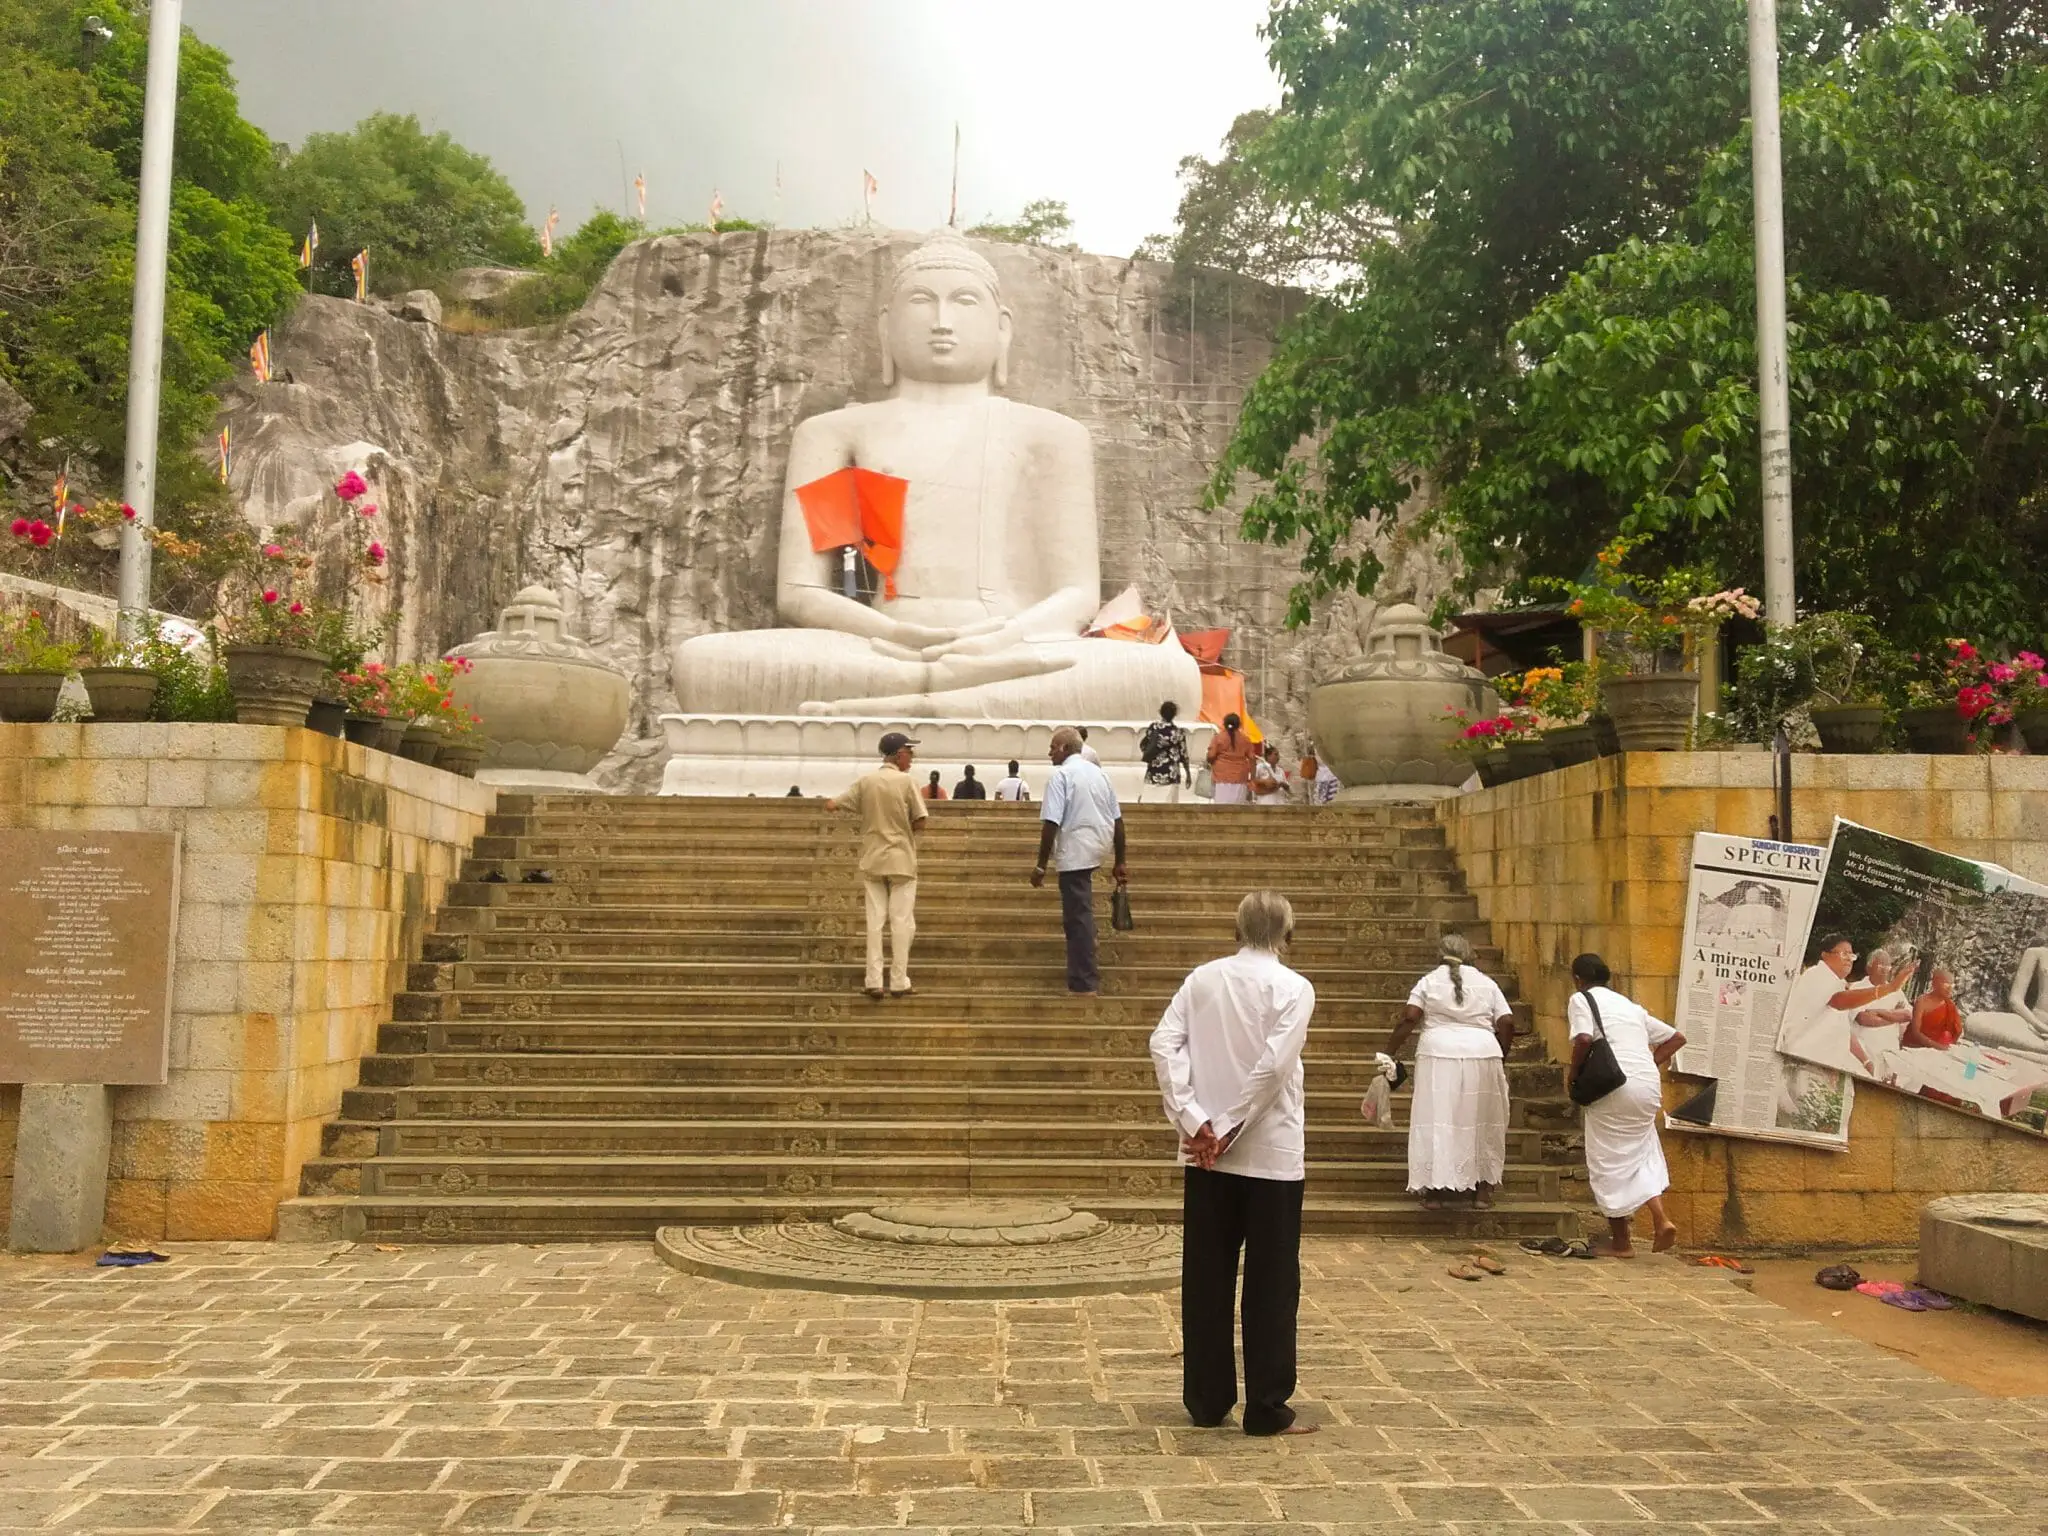 Rambadagalla Buddha Statue